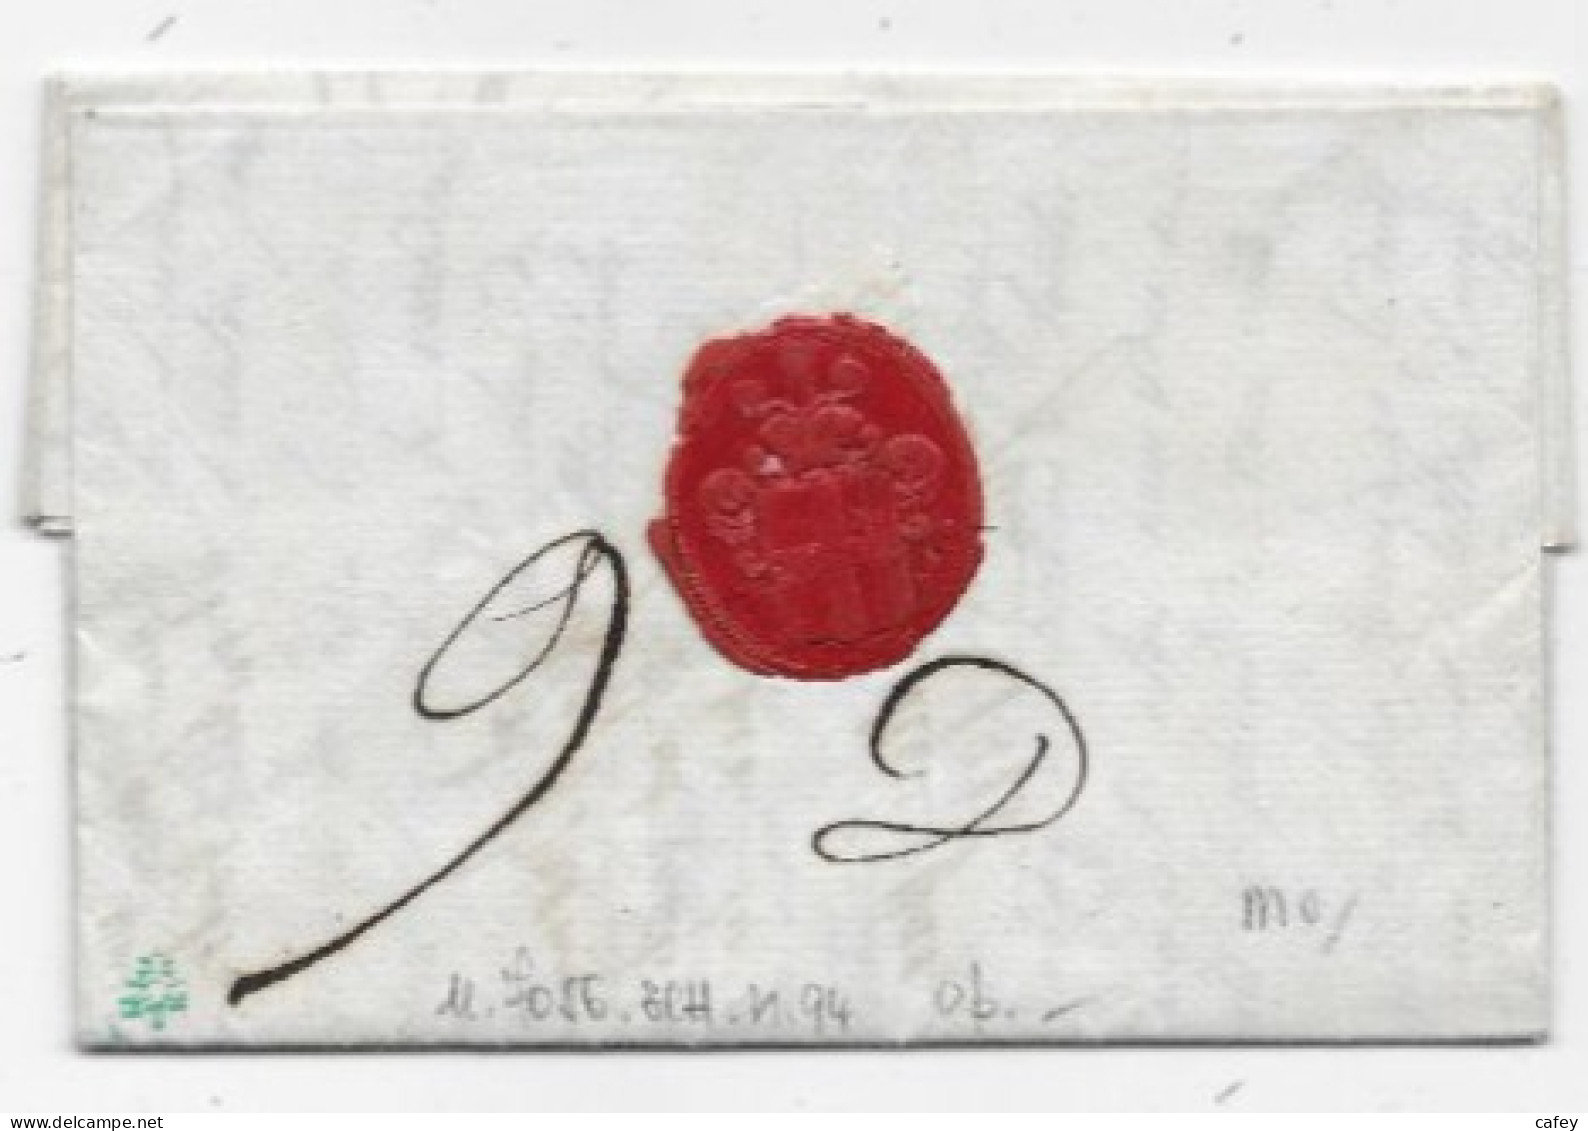 HERAULT Lettre De BEAUDIEU 1810 Marque Postale Rouge P33P / MONTPELLIER  P / ROYAUME D'ITALIE SUP - 1801-1848: Précurseurs XIX